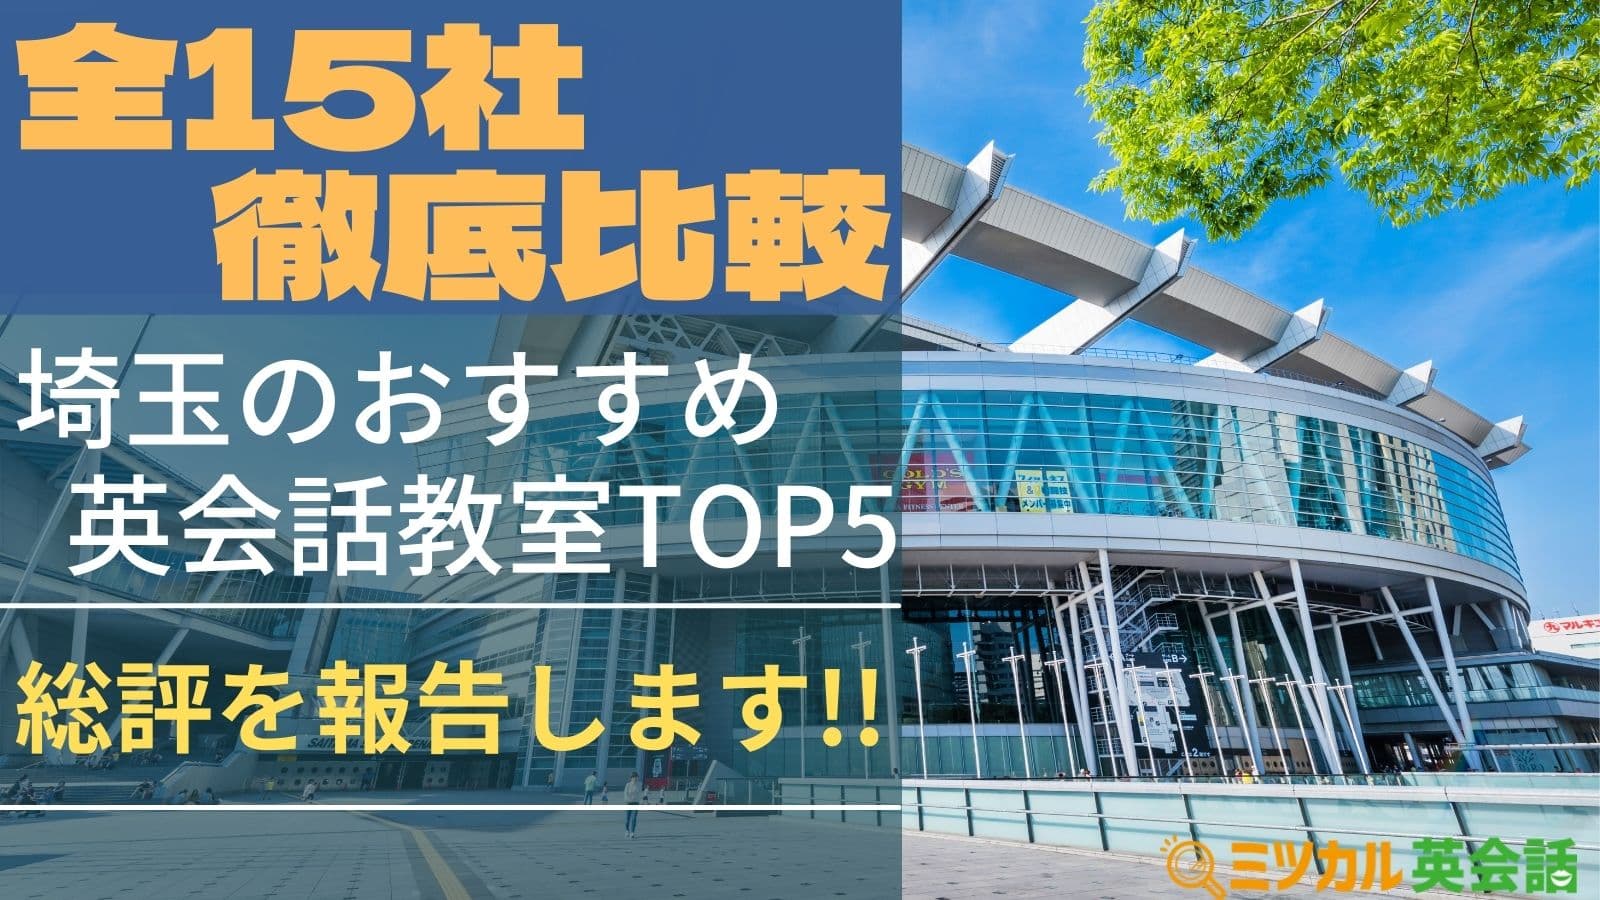 Top5 埼玉でおすすめの英会話教室を比較 実際に体験した内容を公開 ミツカル英会話